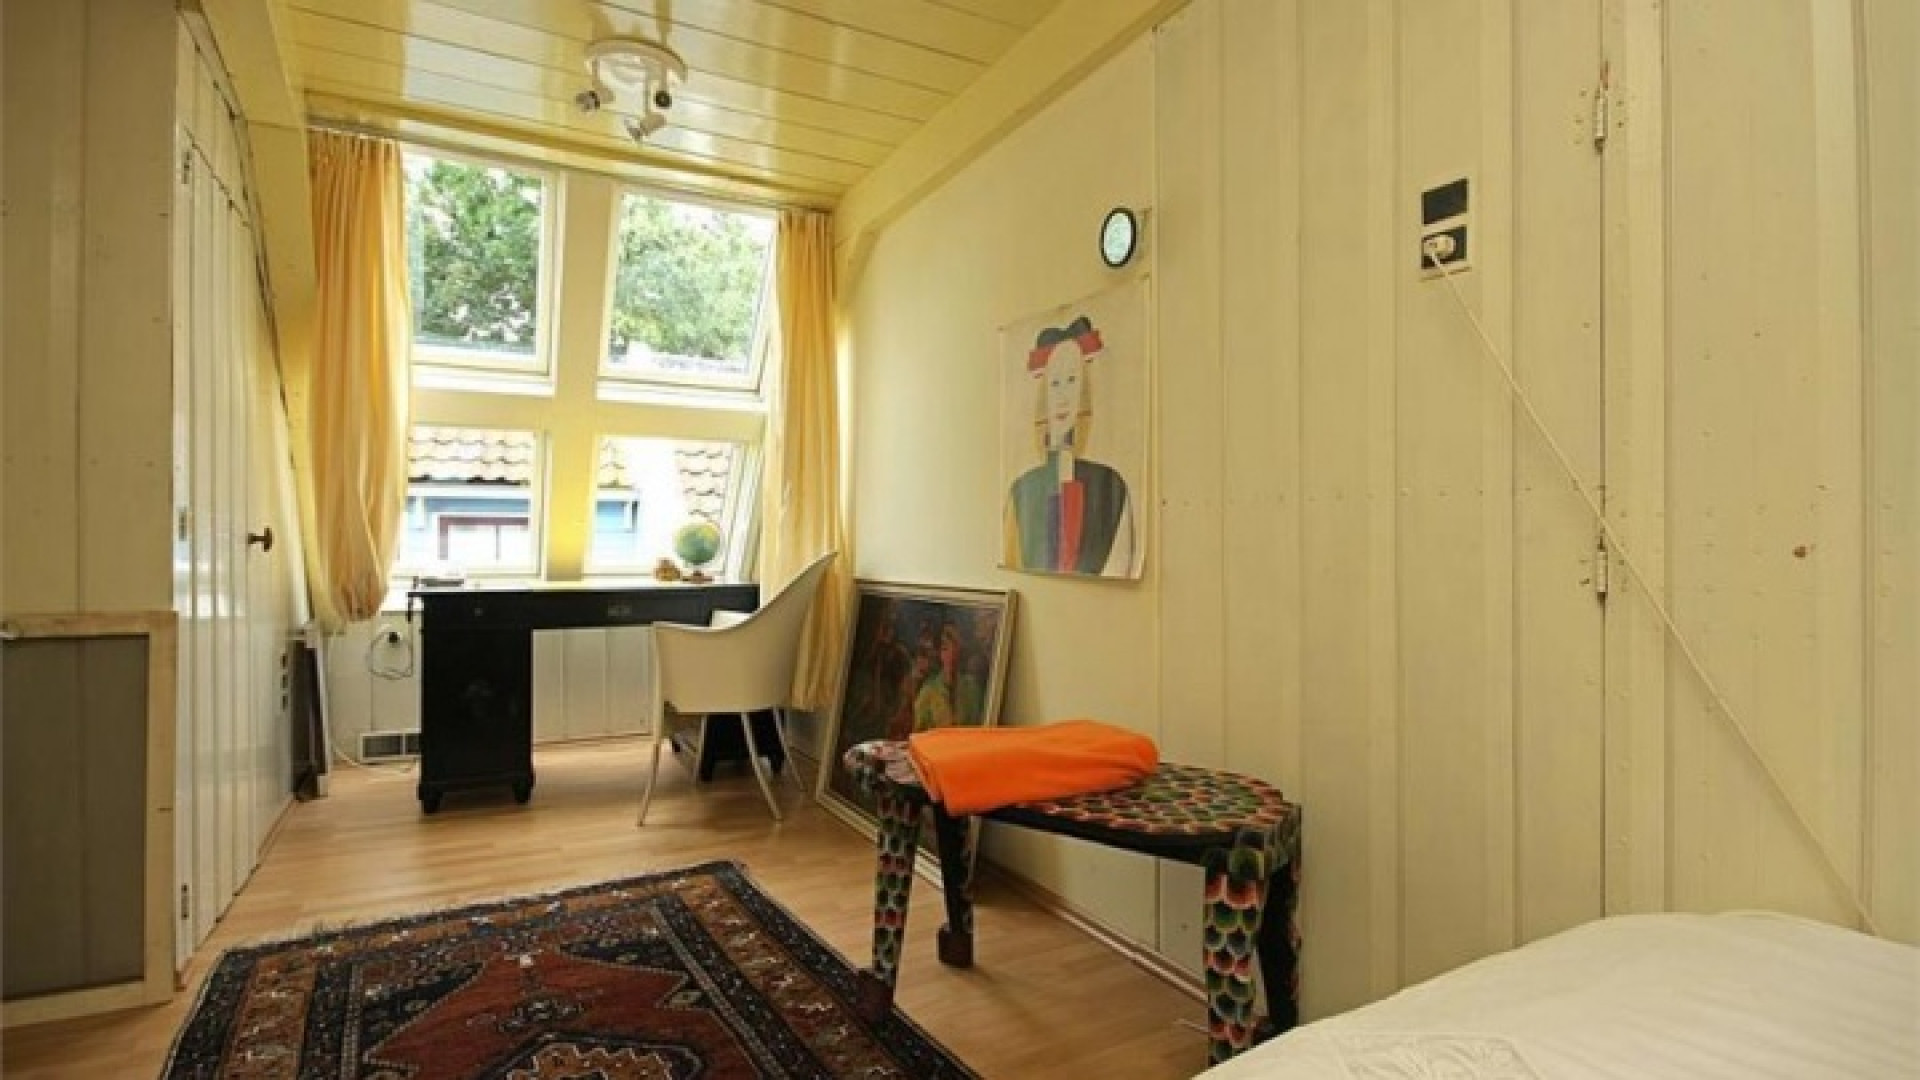 Wilbert Gieske verruilt Amsterdam voor prachtig huurhuis in Broek in Waterland. Zie foto's 12